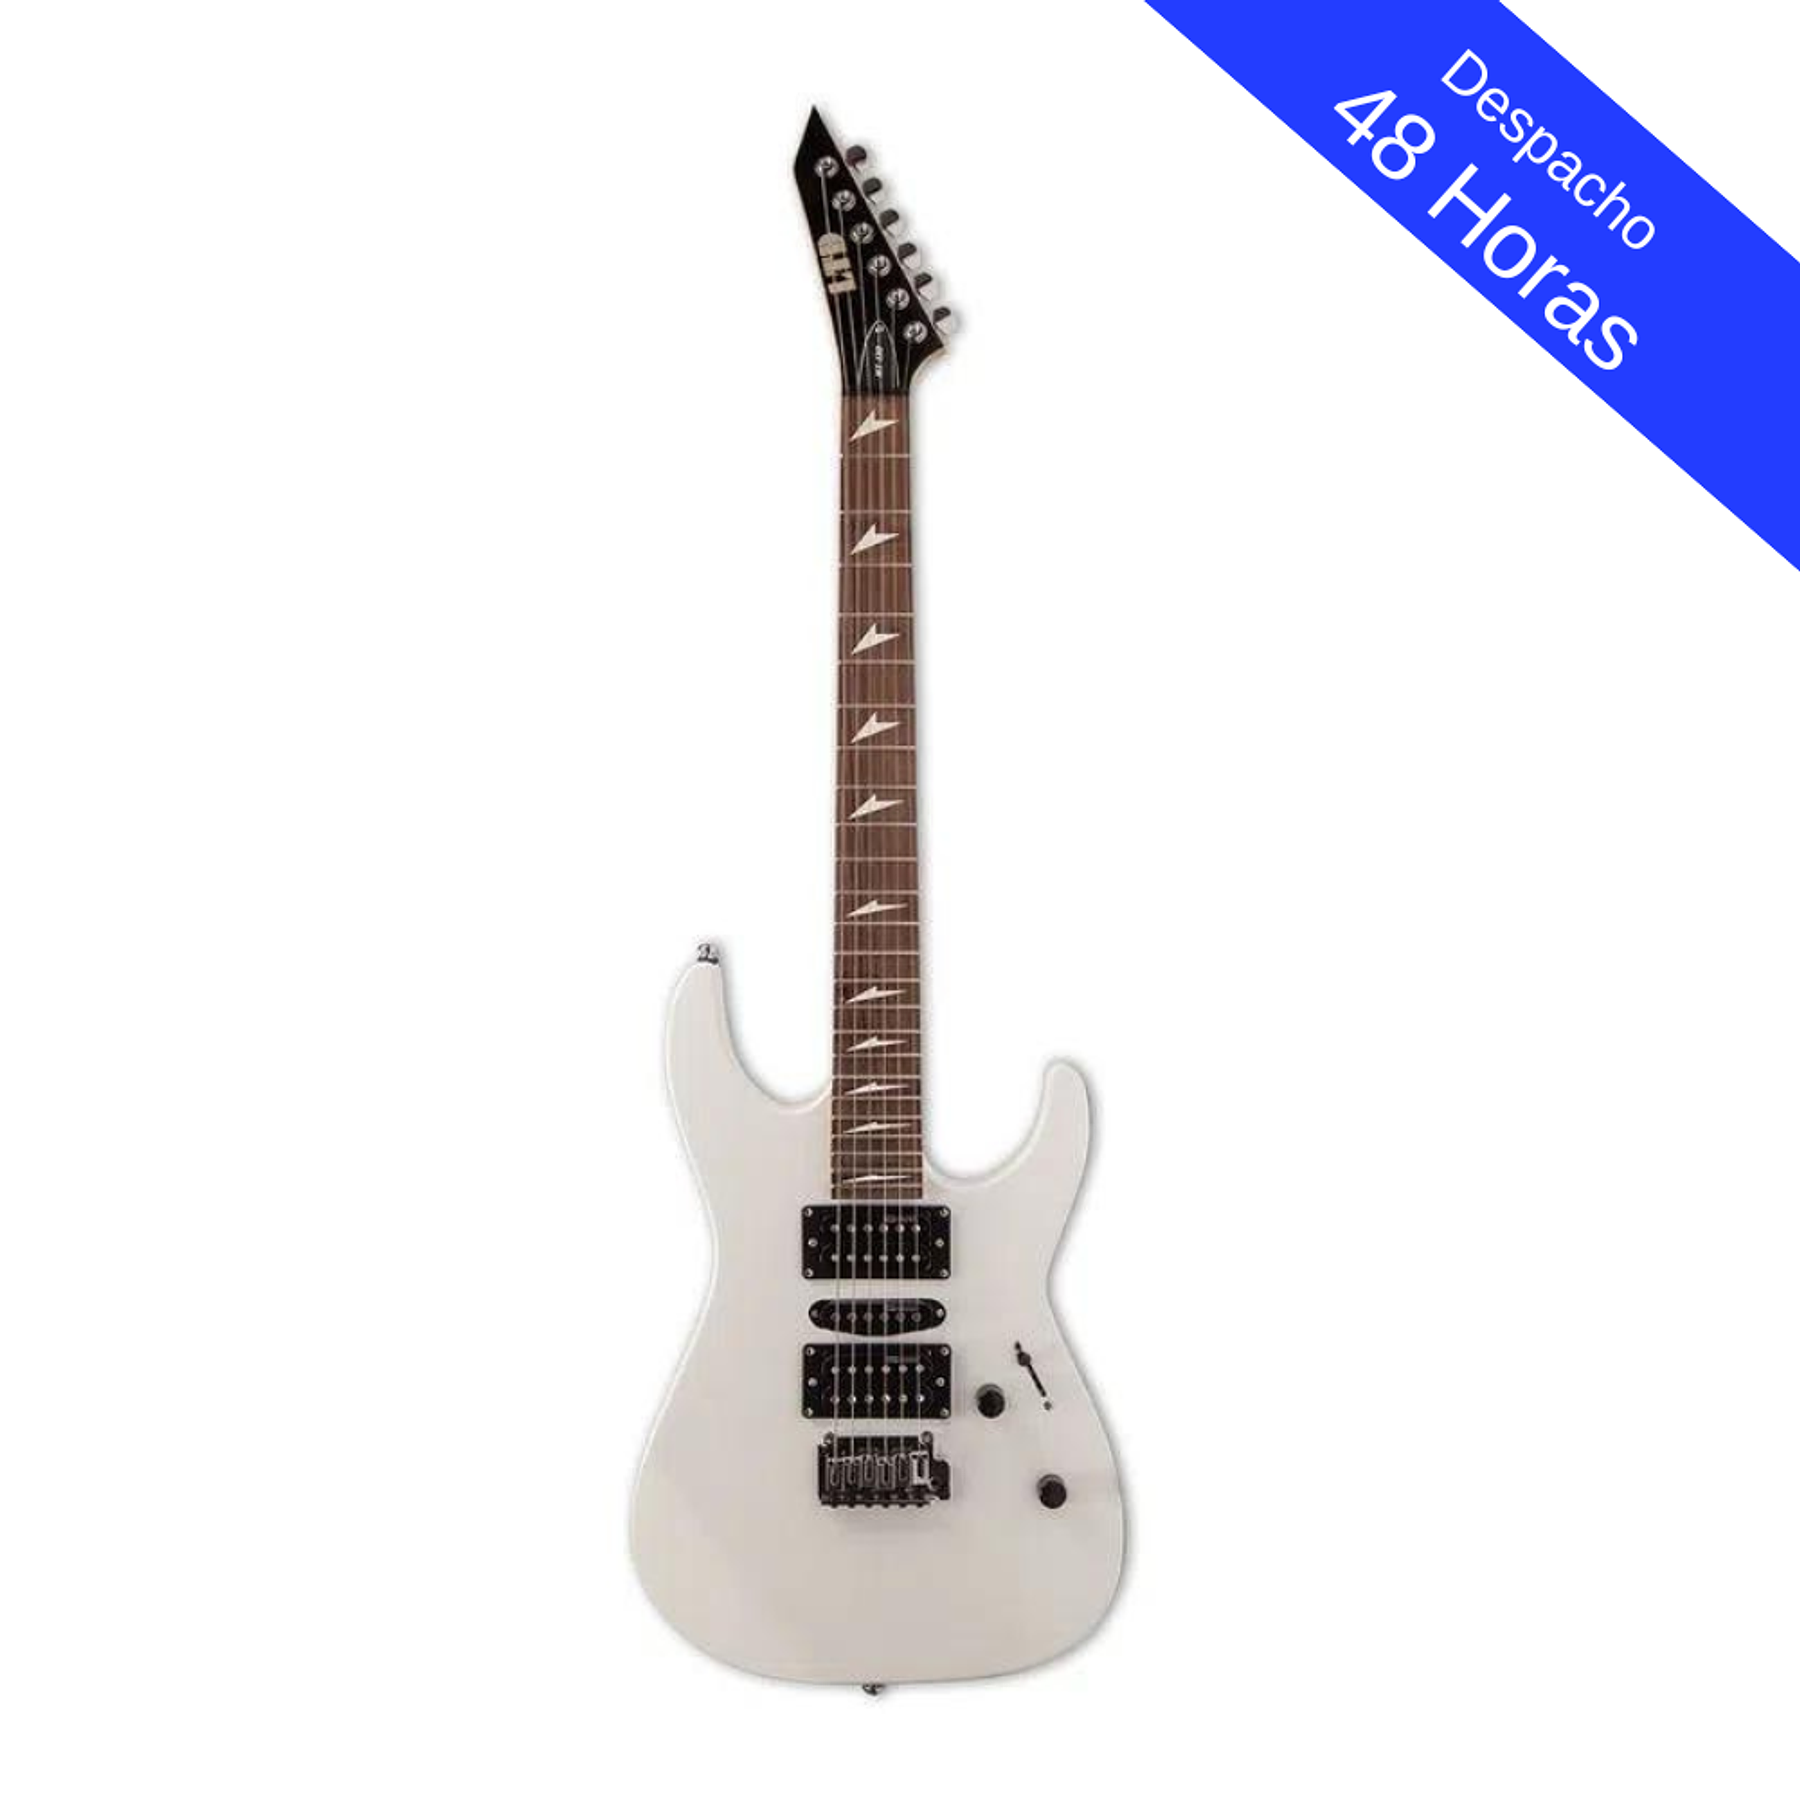 LXMT 130 Guitarra eléctrica LTD - Blanca